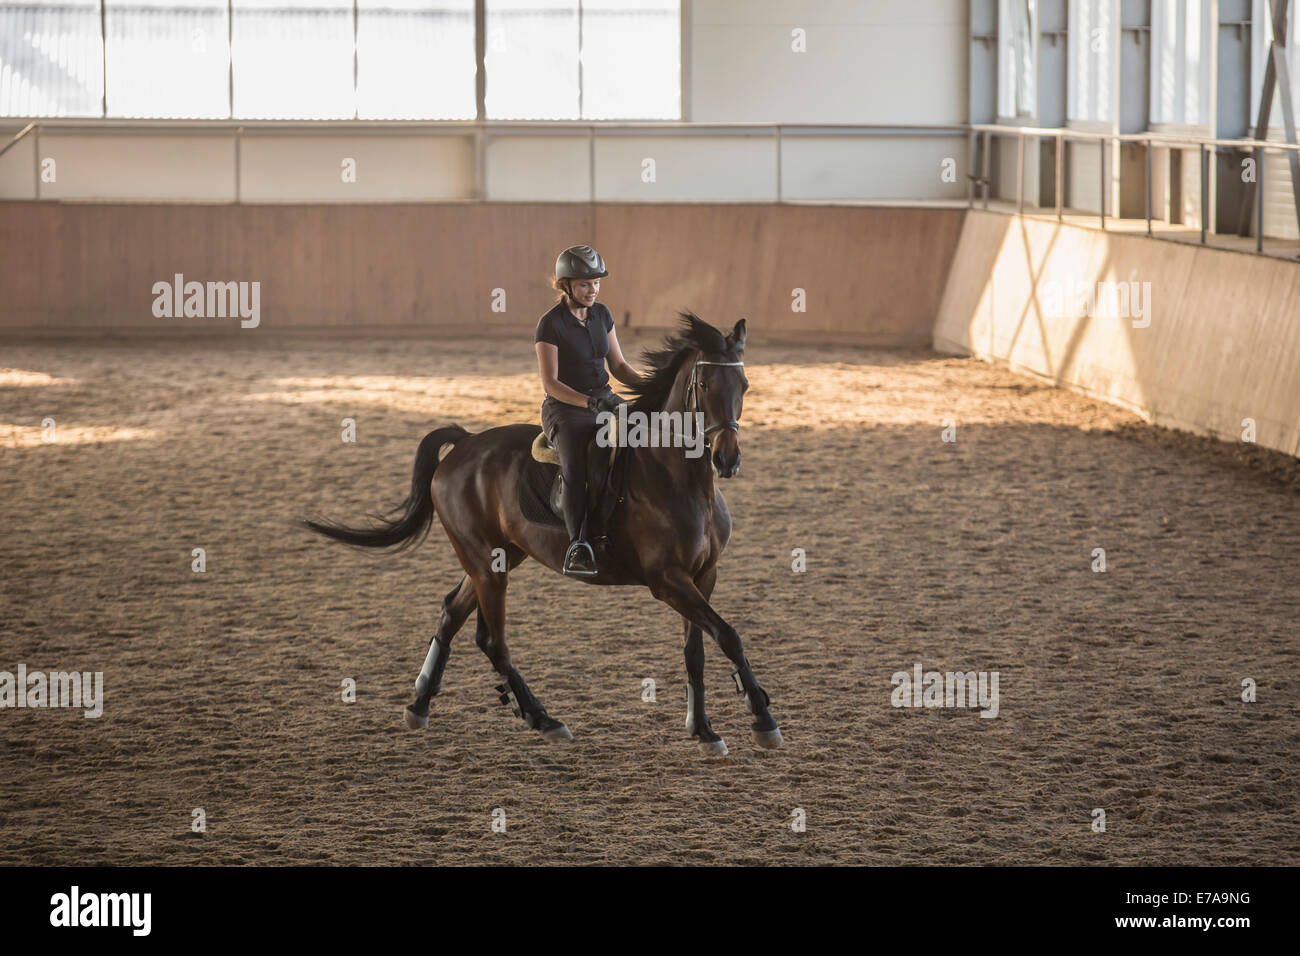 Woman riding horse stable dans la formation Banque D'Images